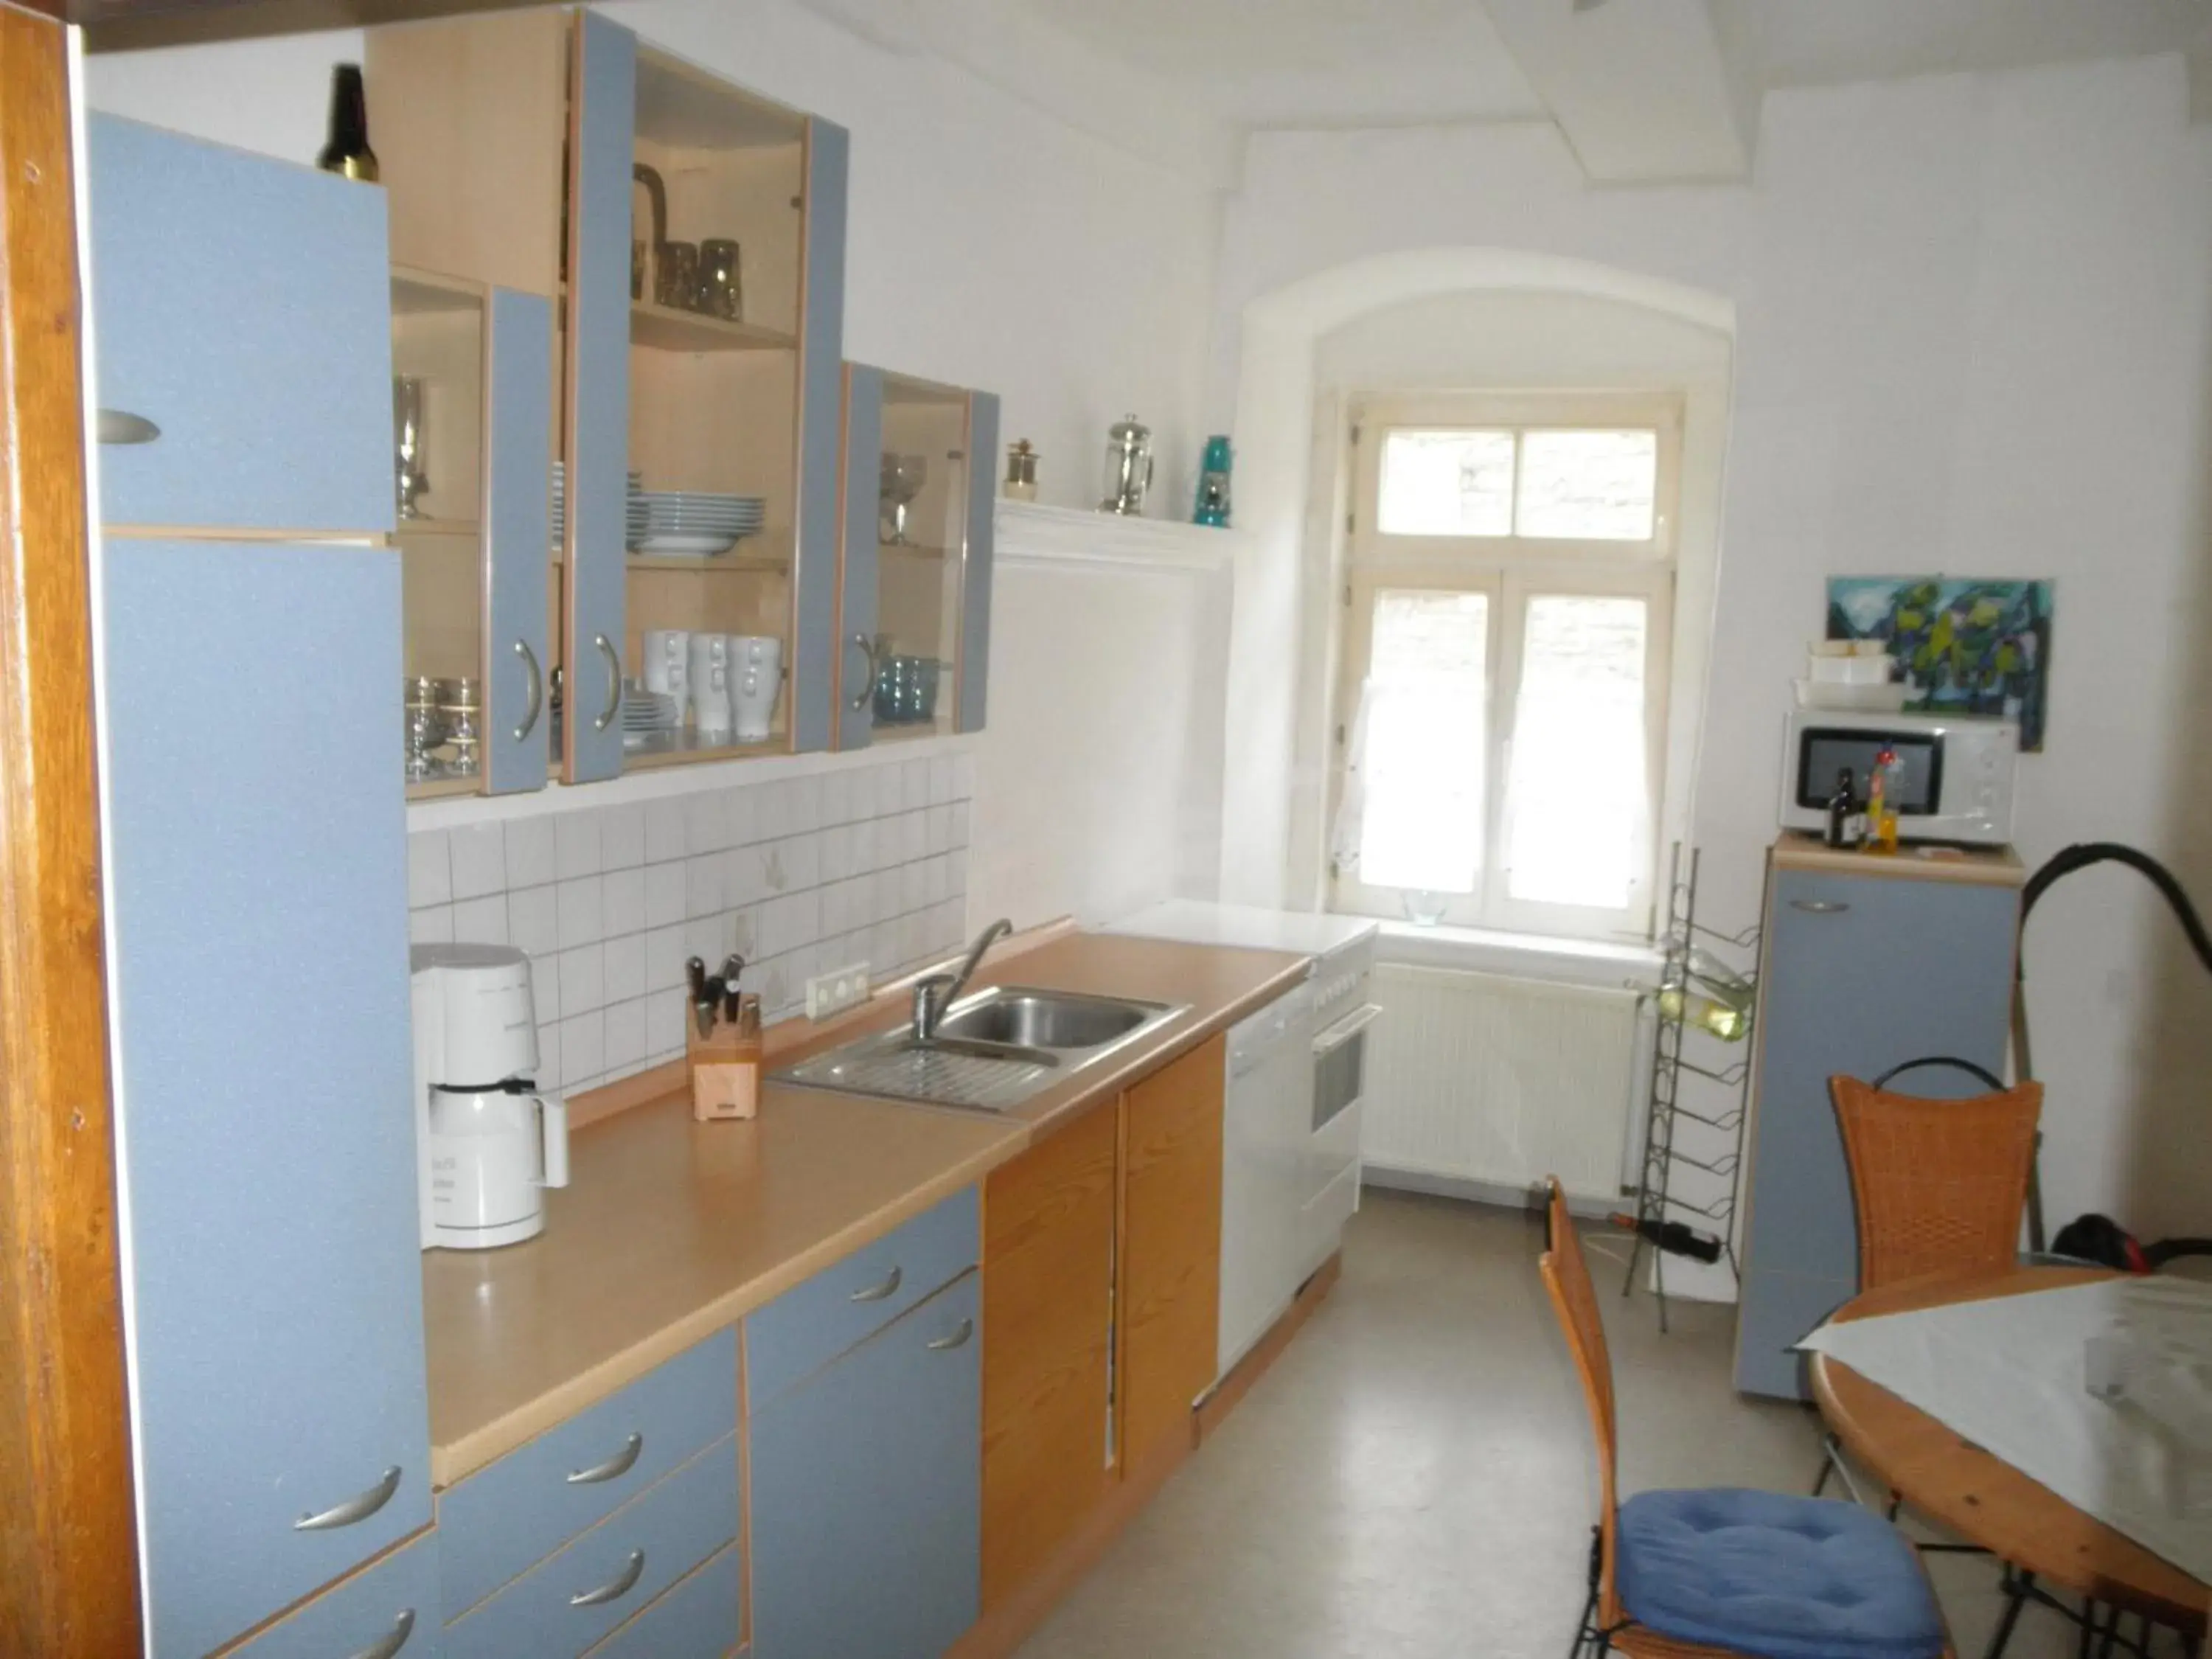 Kitchen or kitchenette, Kitchen/Kitchenette in Altstadthaus